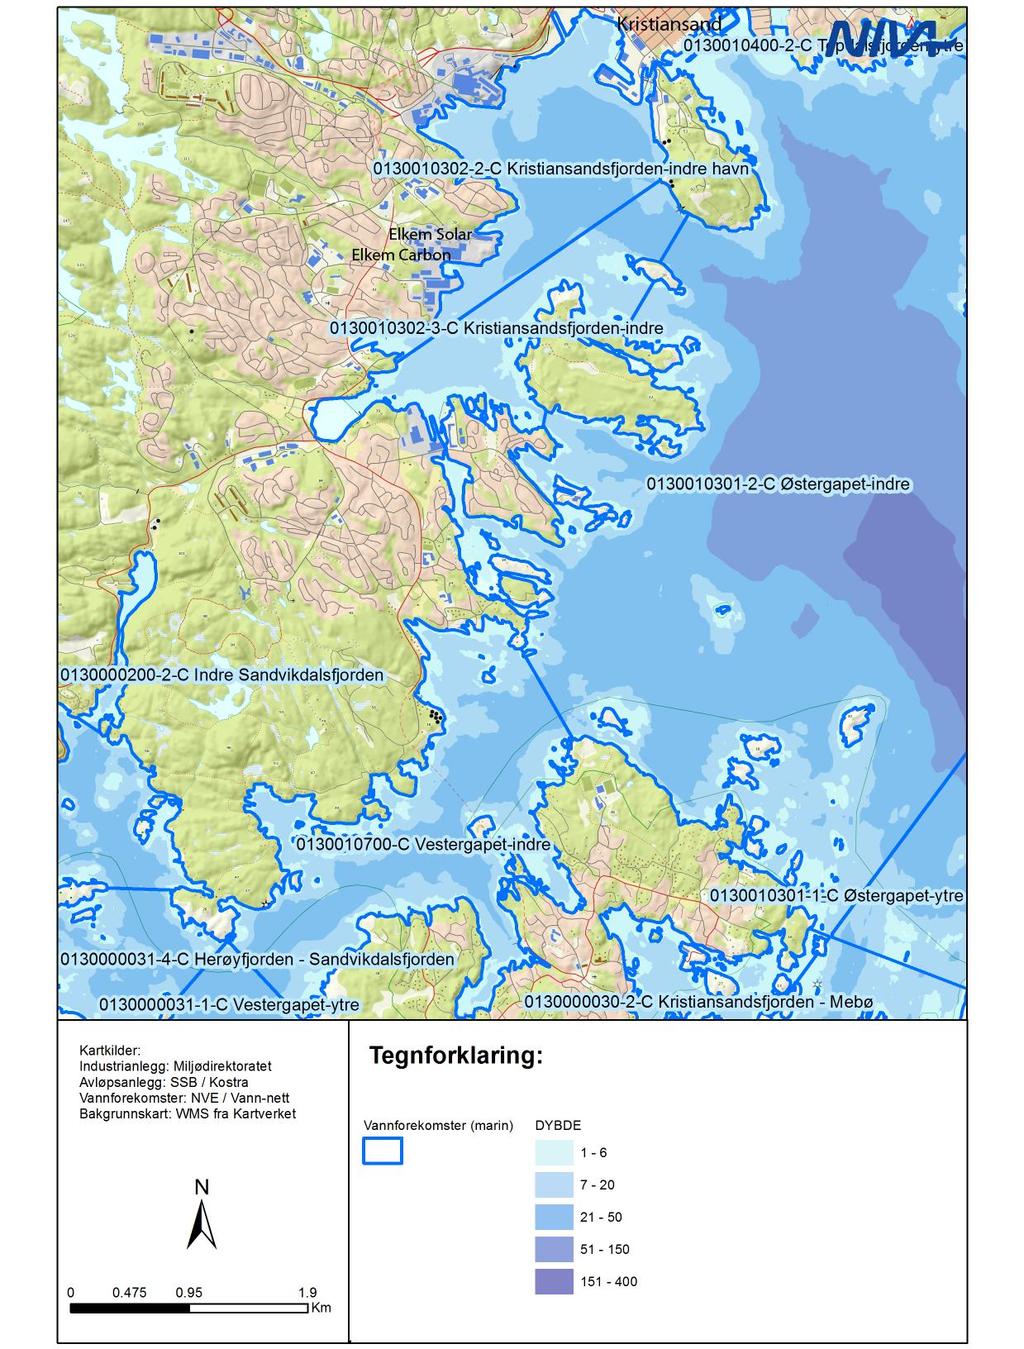 Figur 3. Oversiktskart som viser plasseringen av bedriftene REC Solar Norway AS og Elkem Carbon AS i Kristiansandsfjorden.